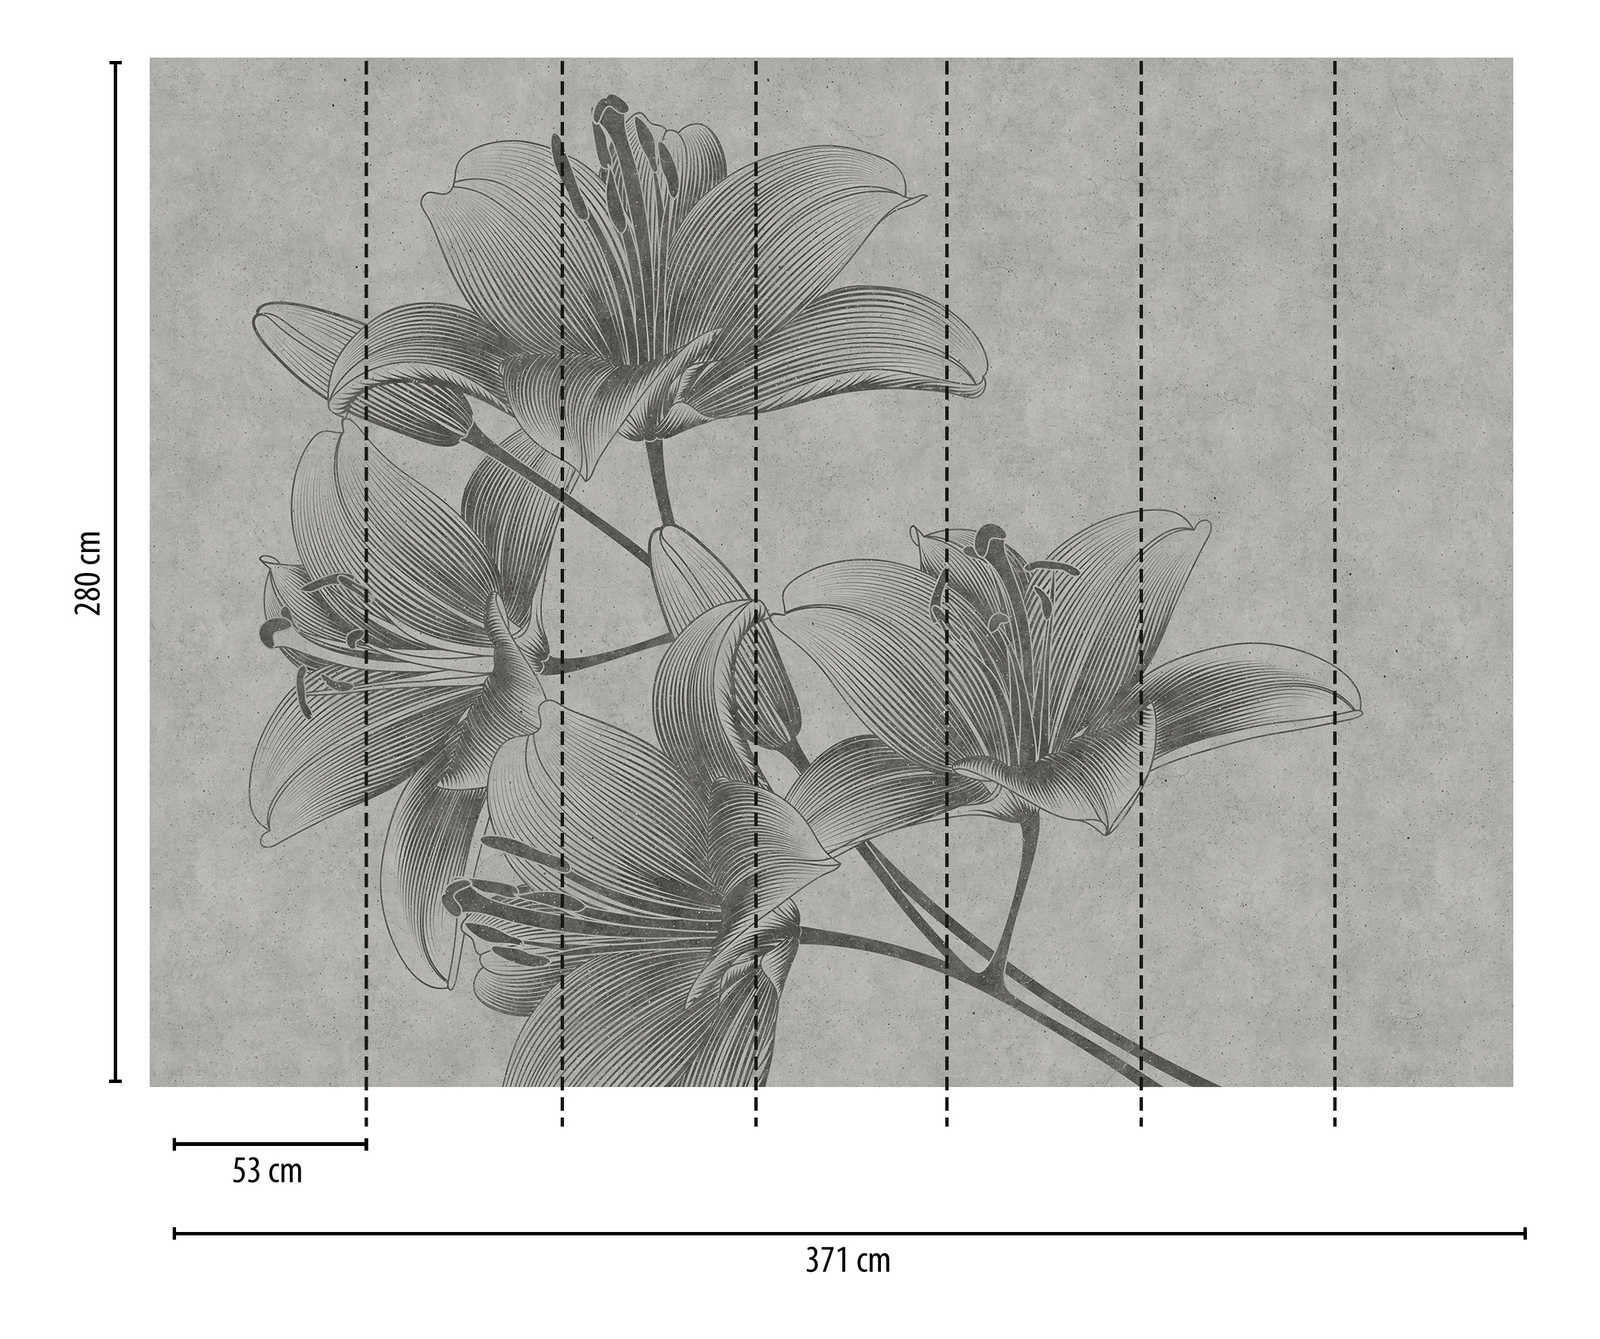             Nouveauté en matière de papier peint | Papier peint gris à fleurs Lys dans le style Line Art
        